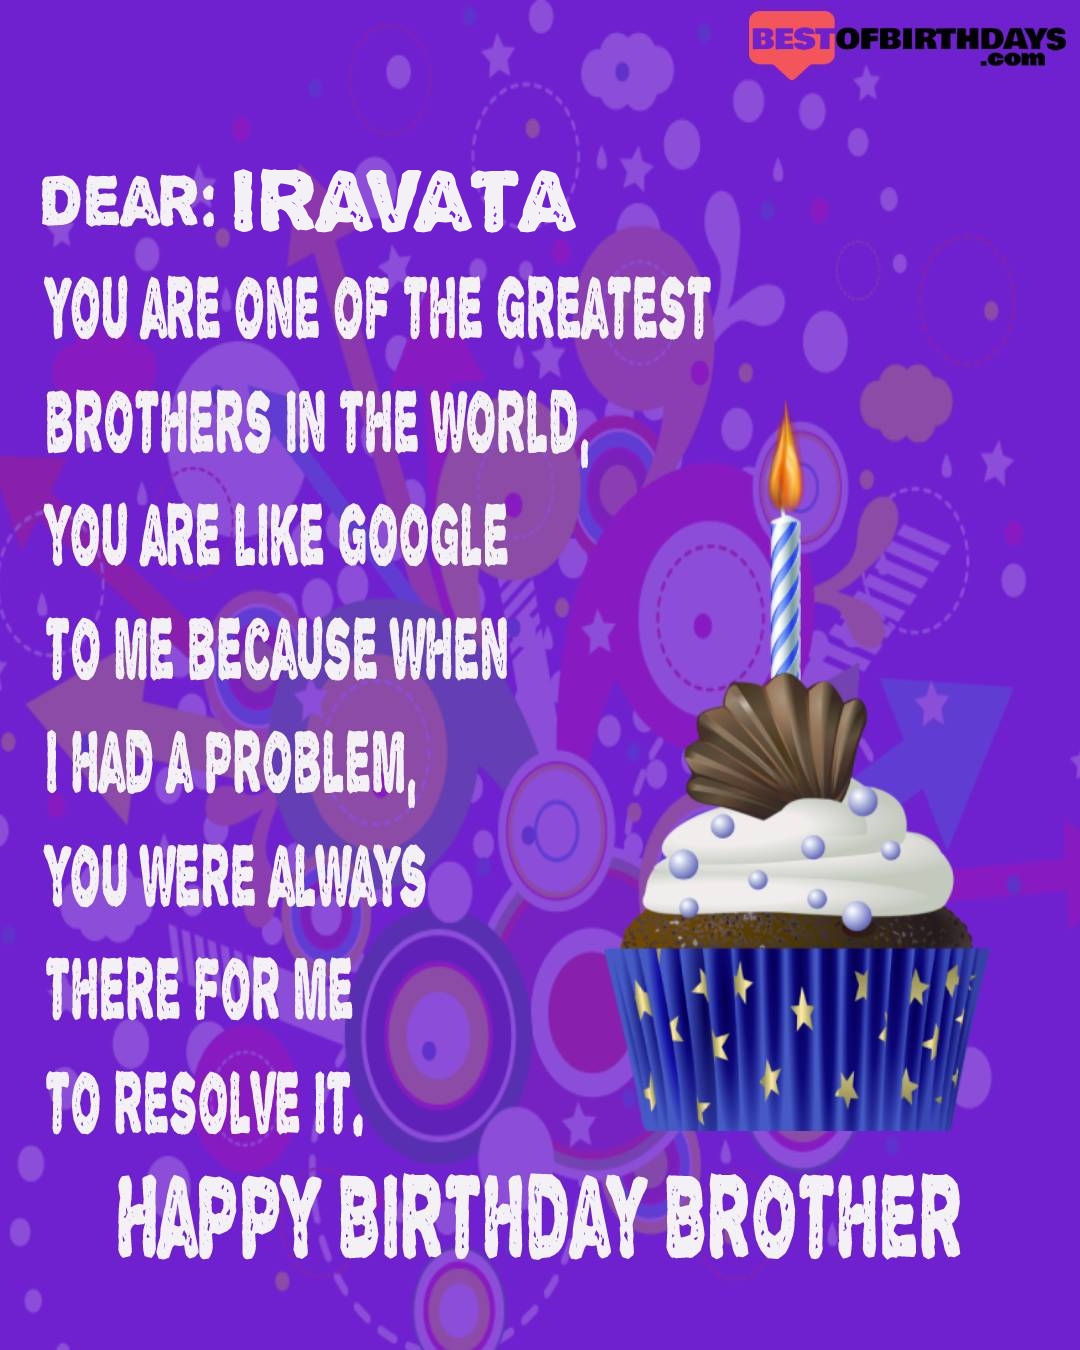 Happy birthday iravata bhai brother bro